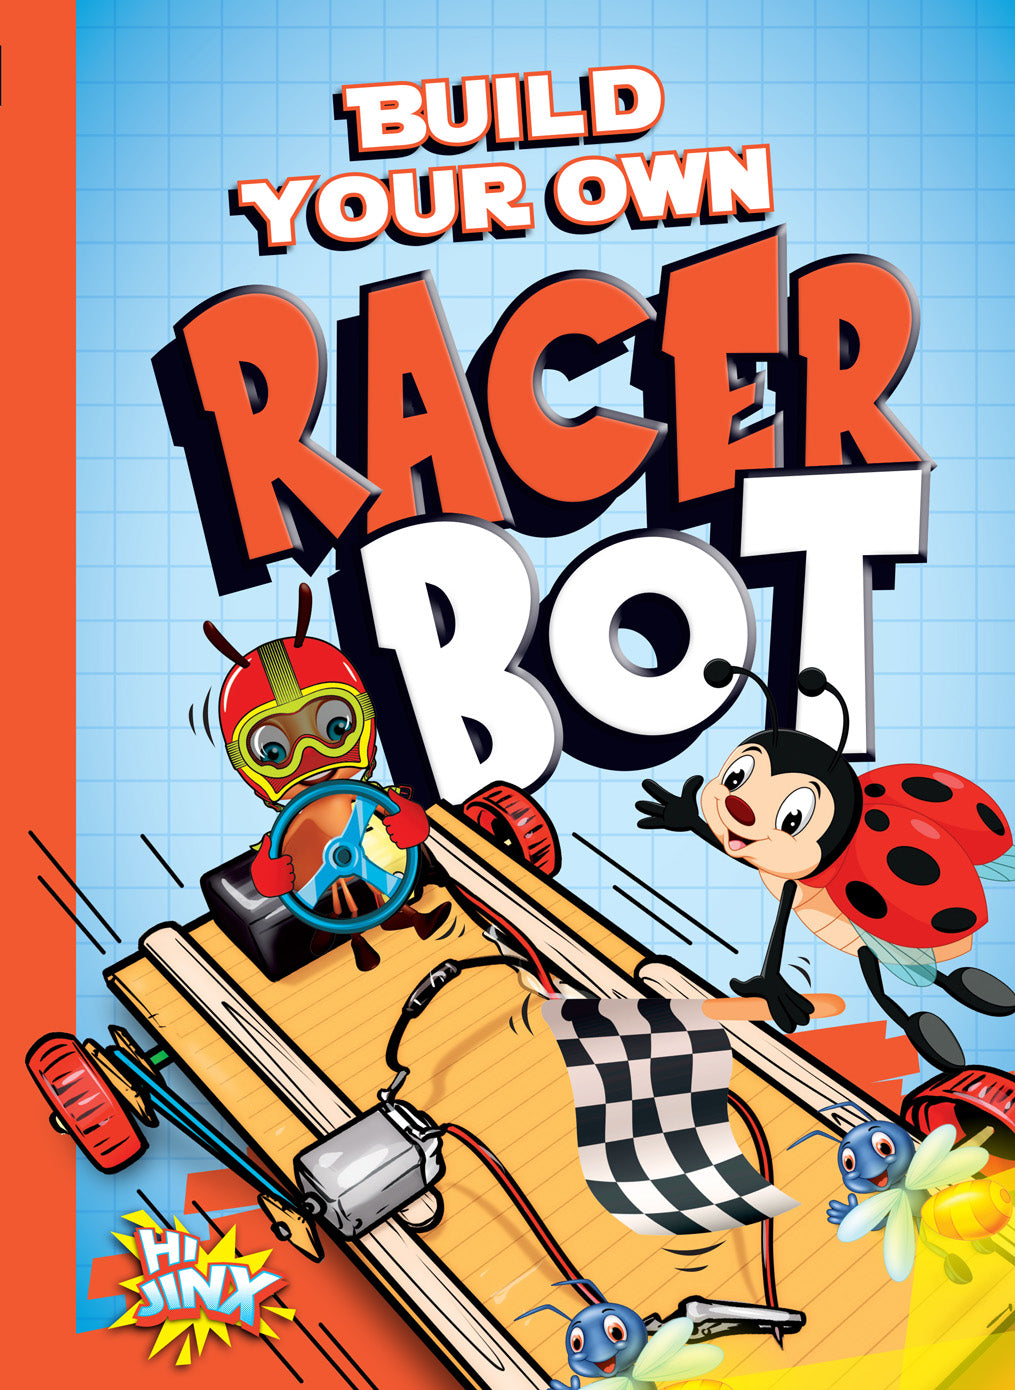 Bot Maker: Build Your Own Racer Bot